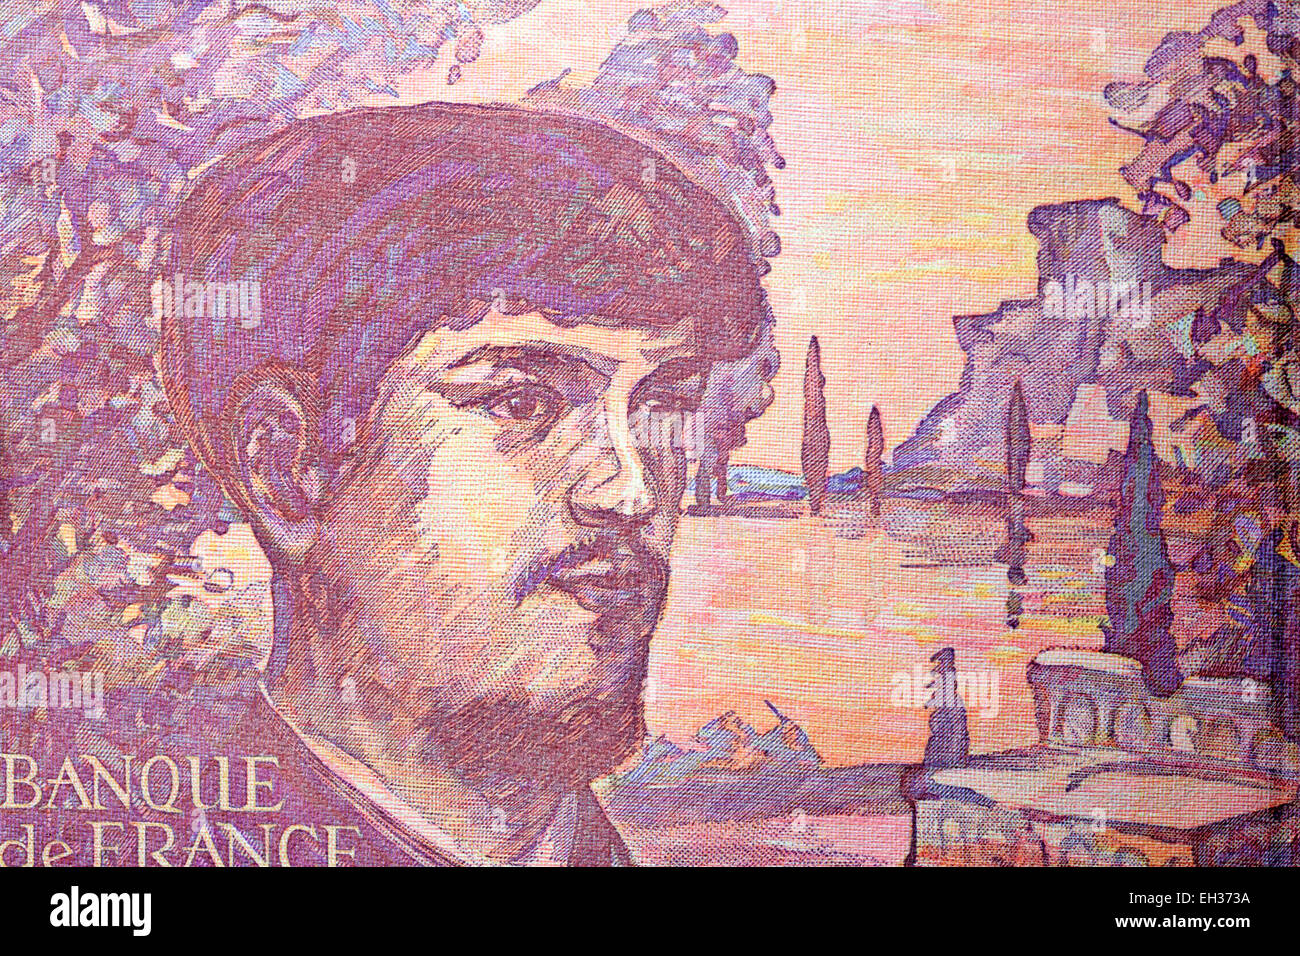 Claude Debussy Compositor billetes de 20 francos, Francia, 1997 Foto de stock